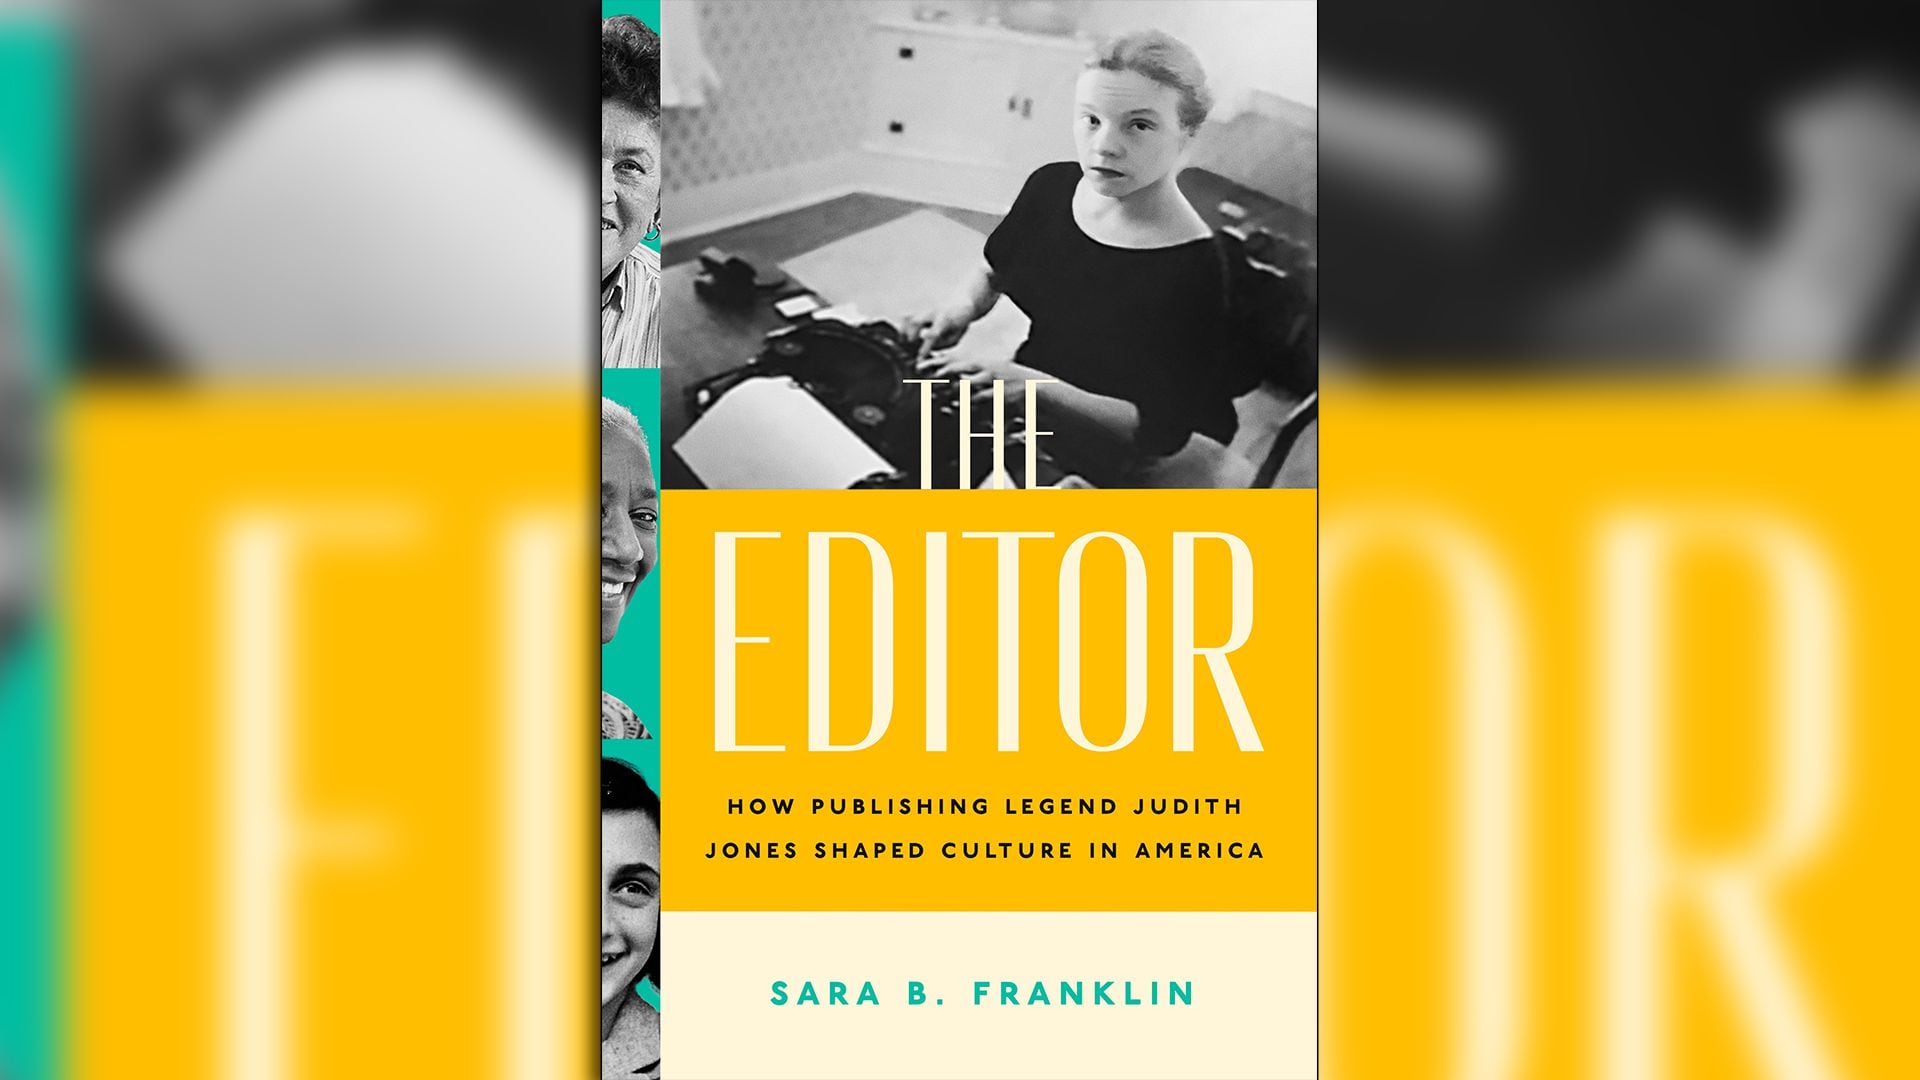 The editor + Julia Child